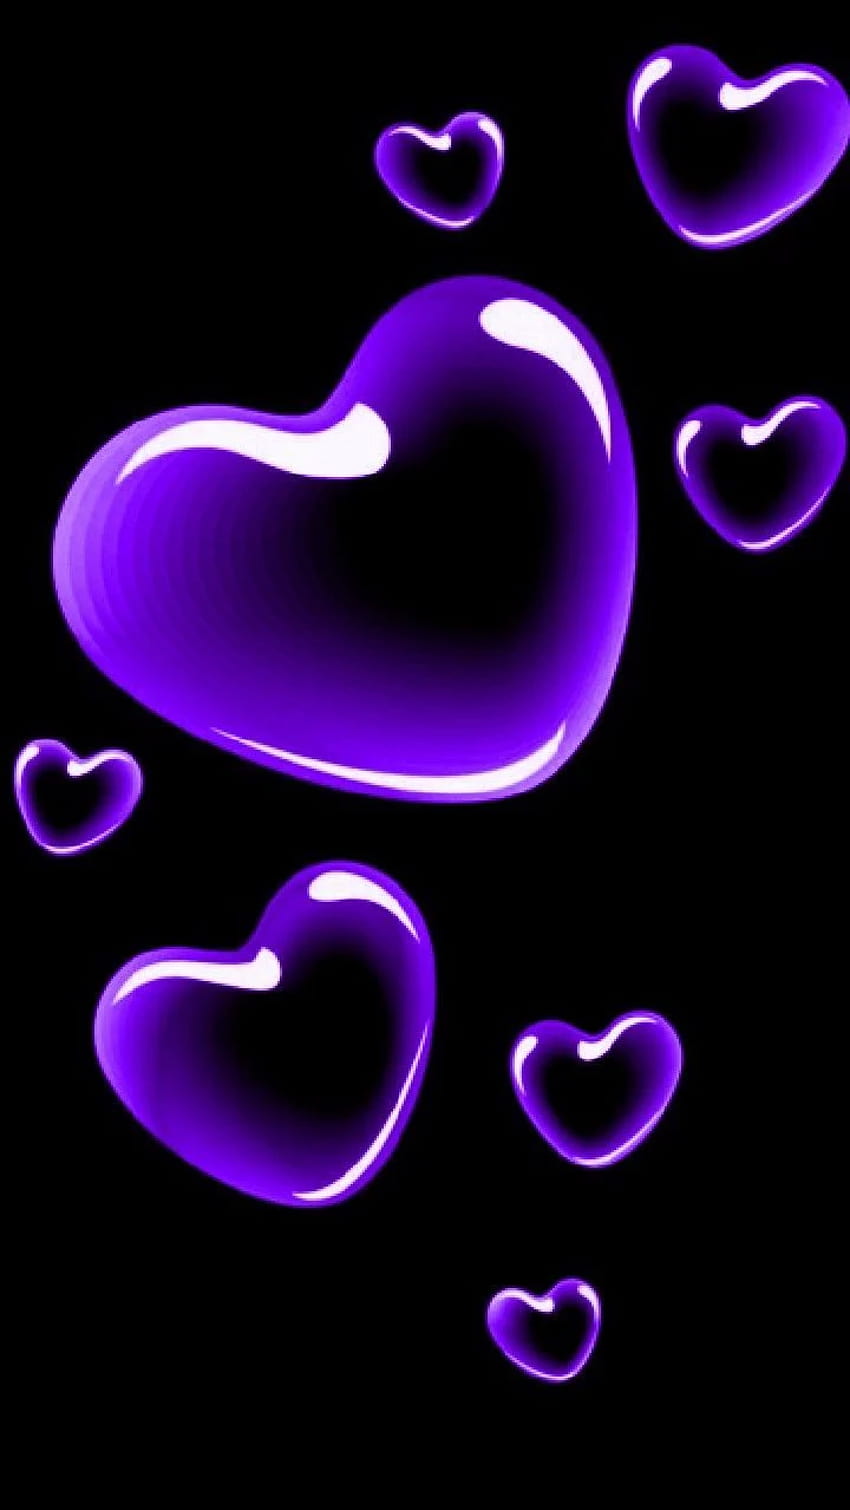 Tổng hợp Wallpaper purple heart đẹp nhất với độ nét cao cho laptop